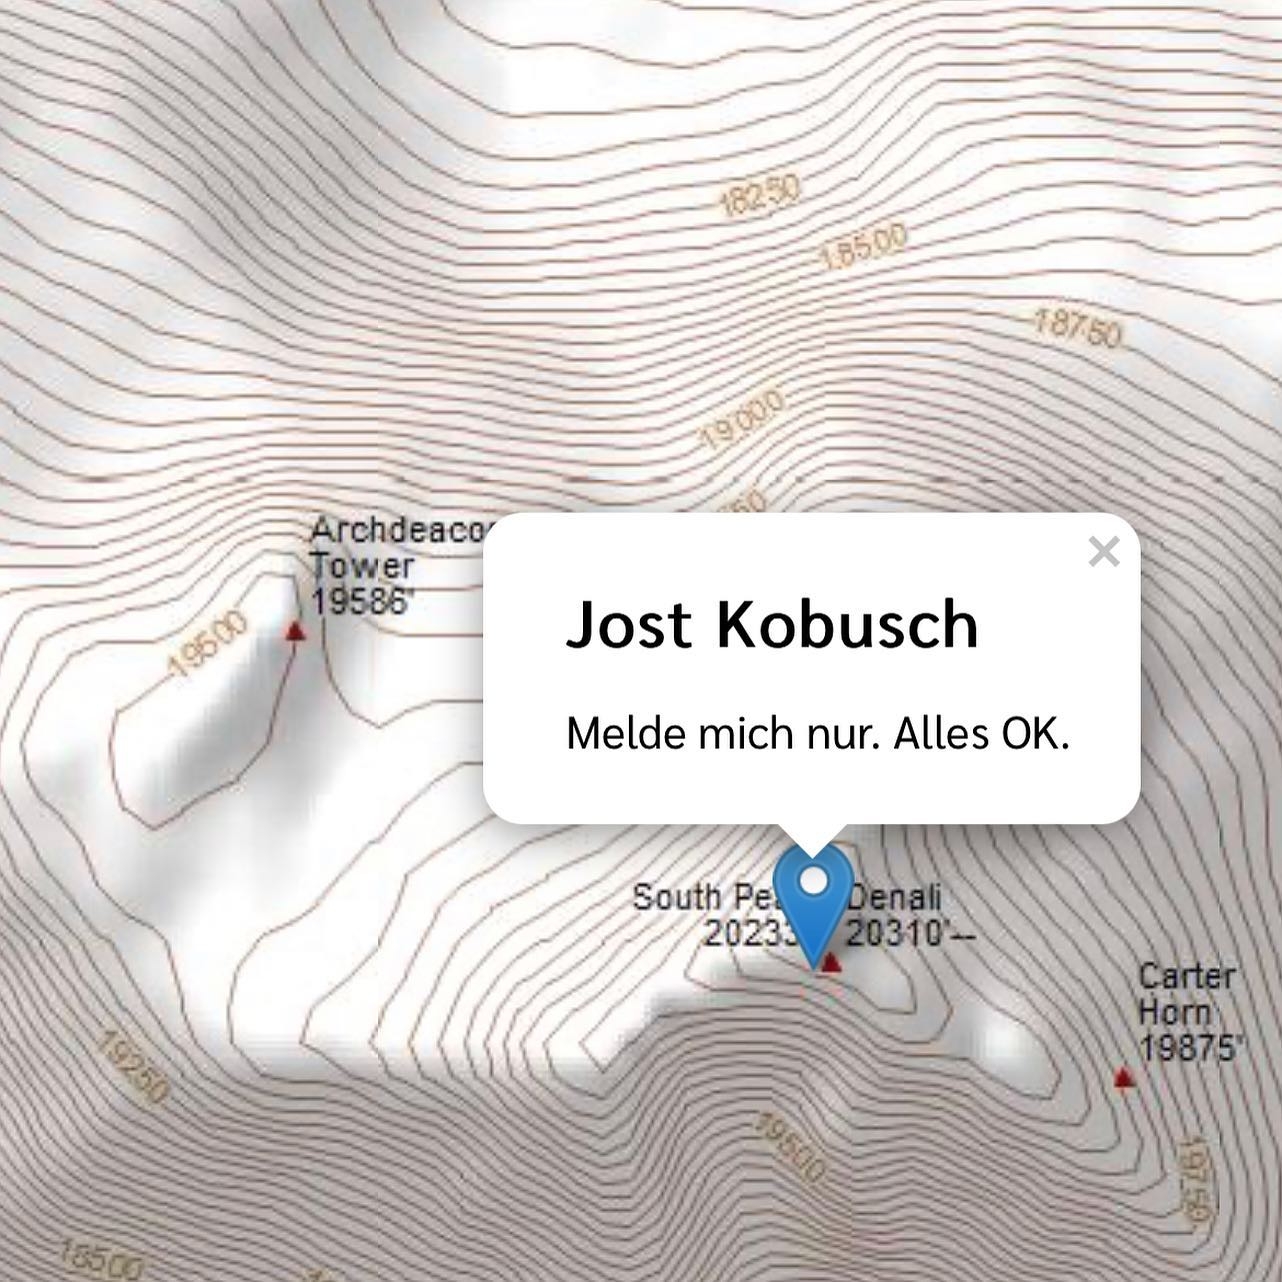 Jost Kobusch, Denali, Couloir Messner